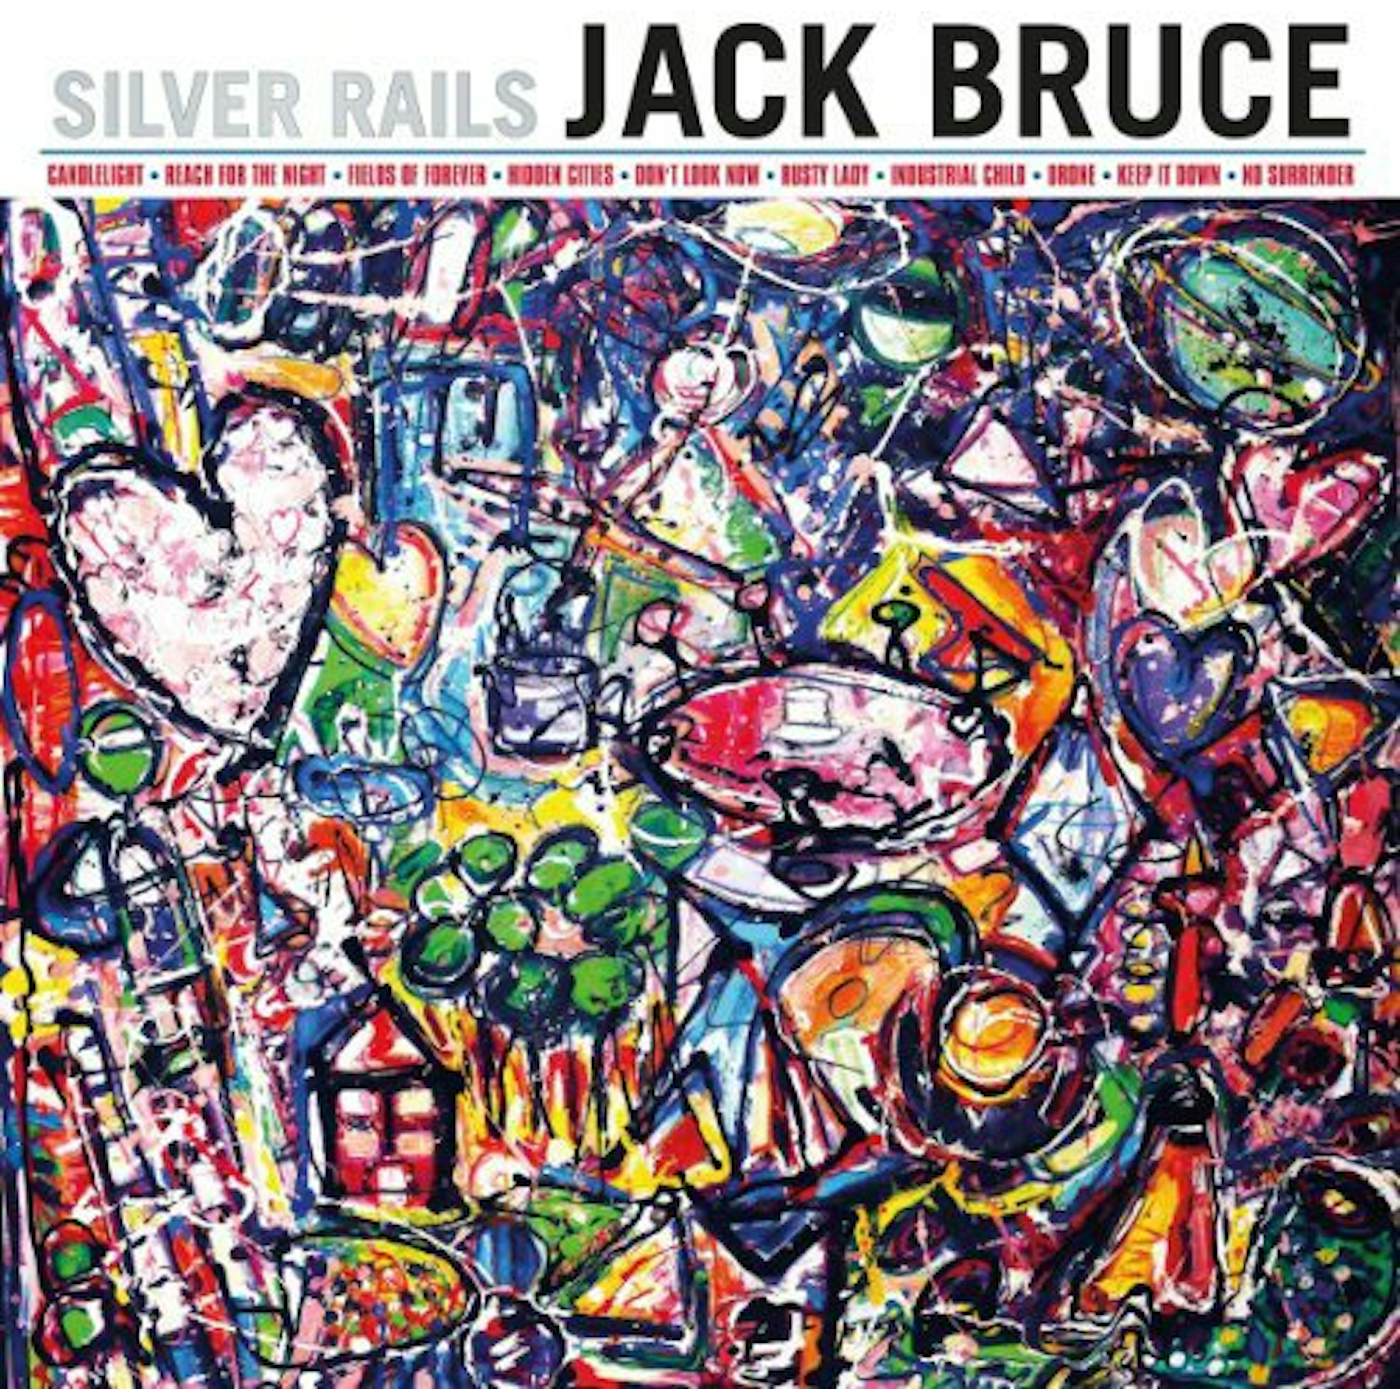 Jack Bruce SILVER RAILS: 180GRAM VINYL EDITION Vinyl Record - 180 Gram Pressing